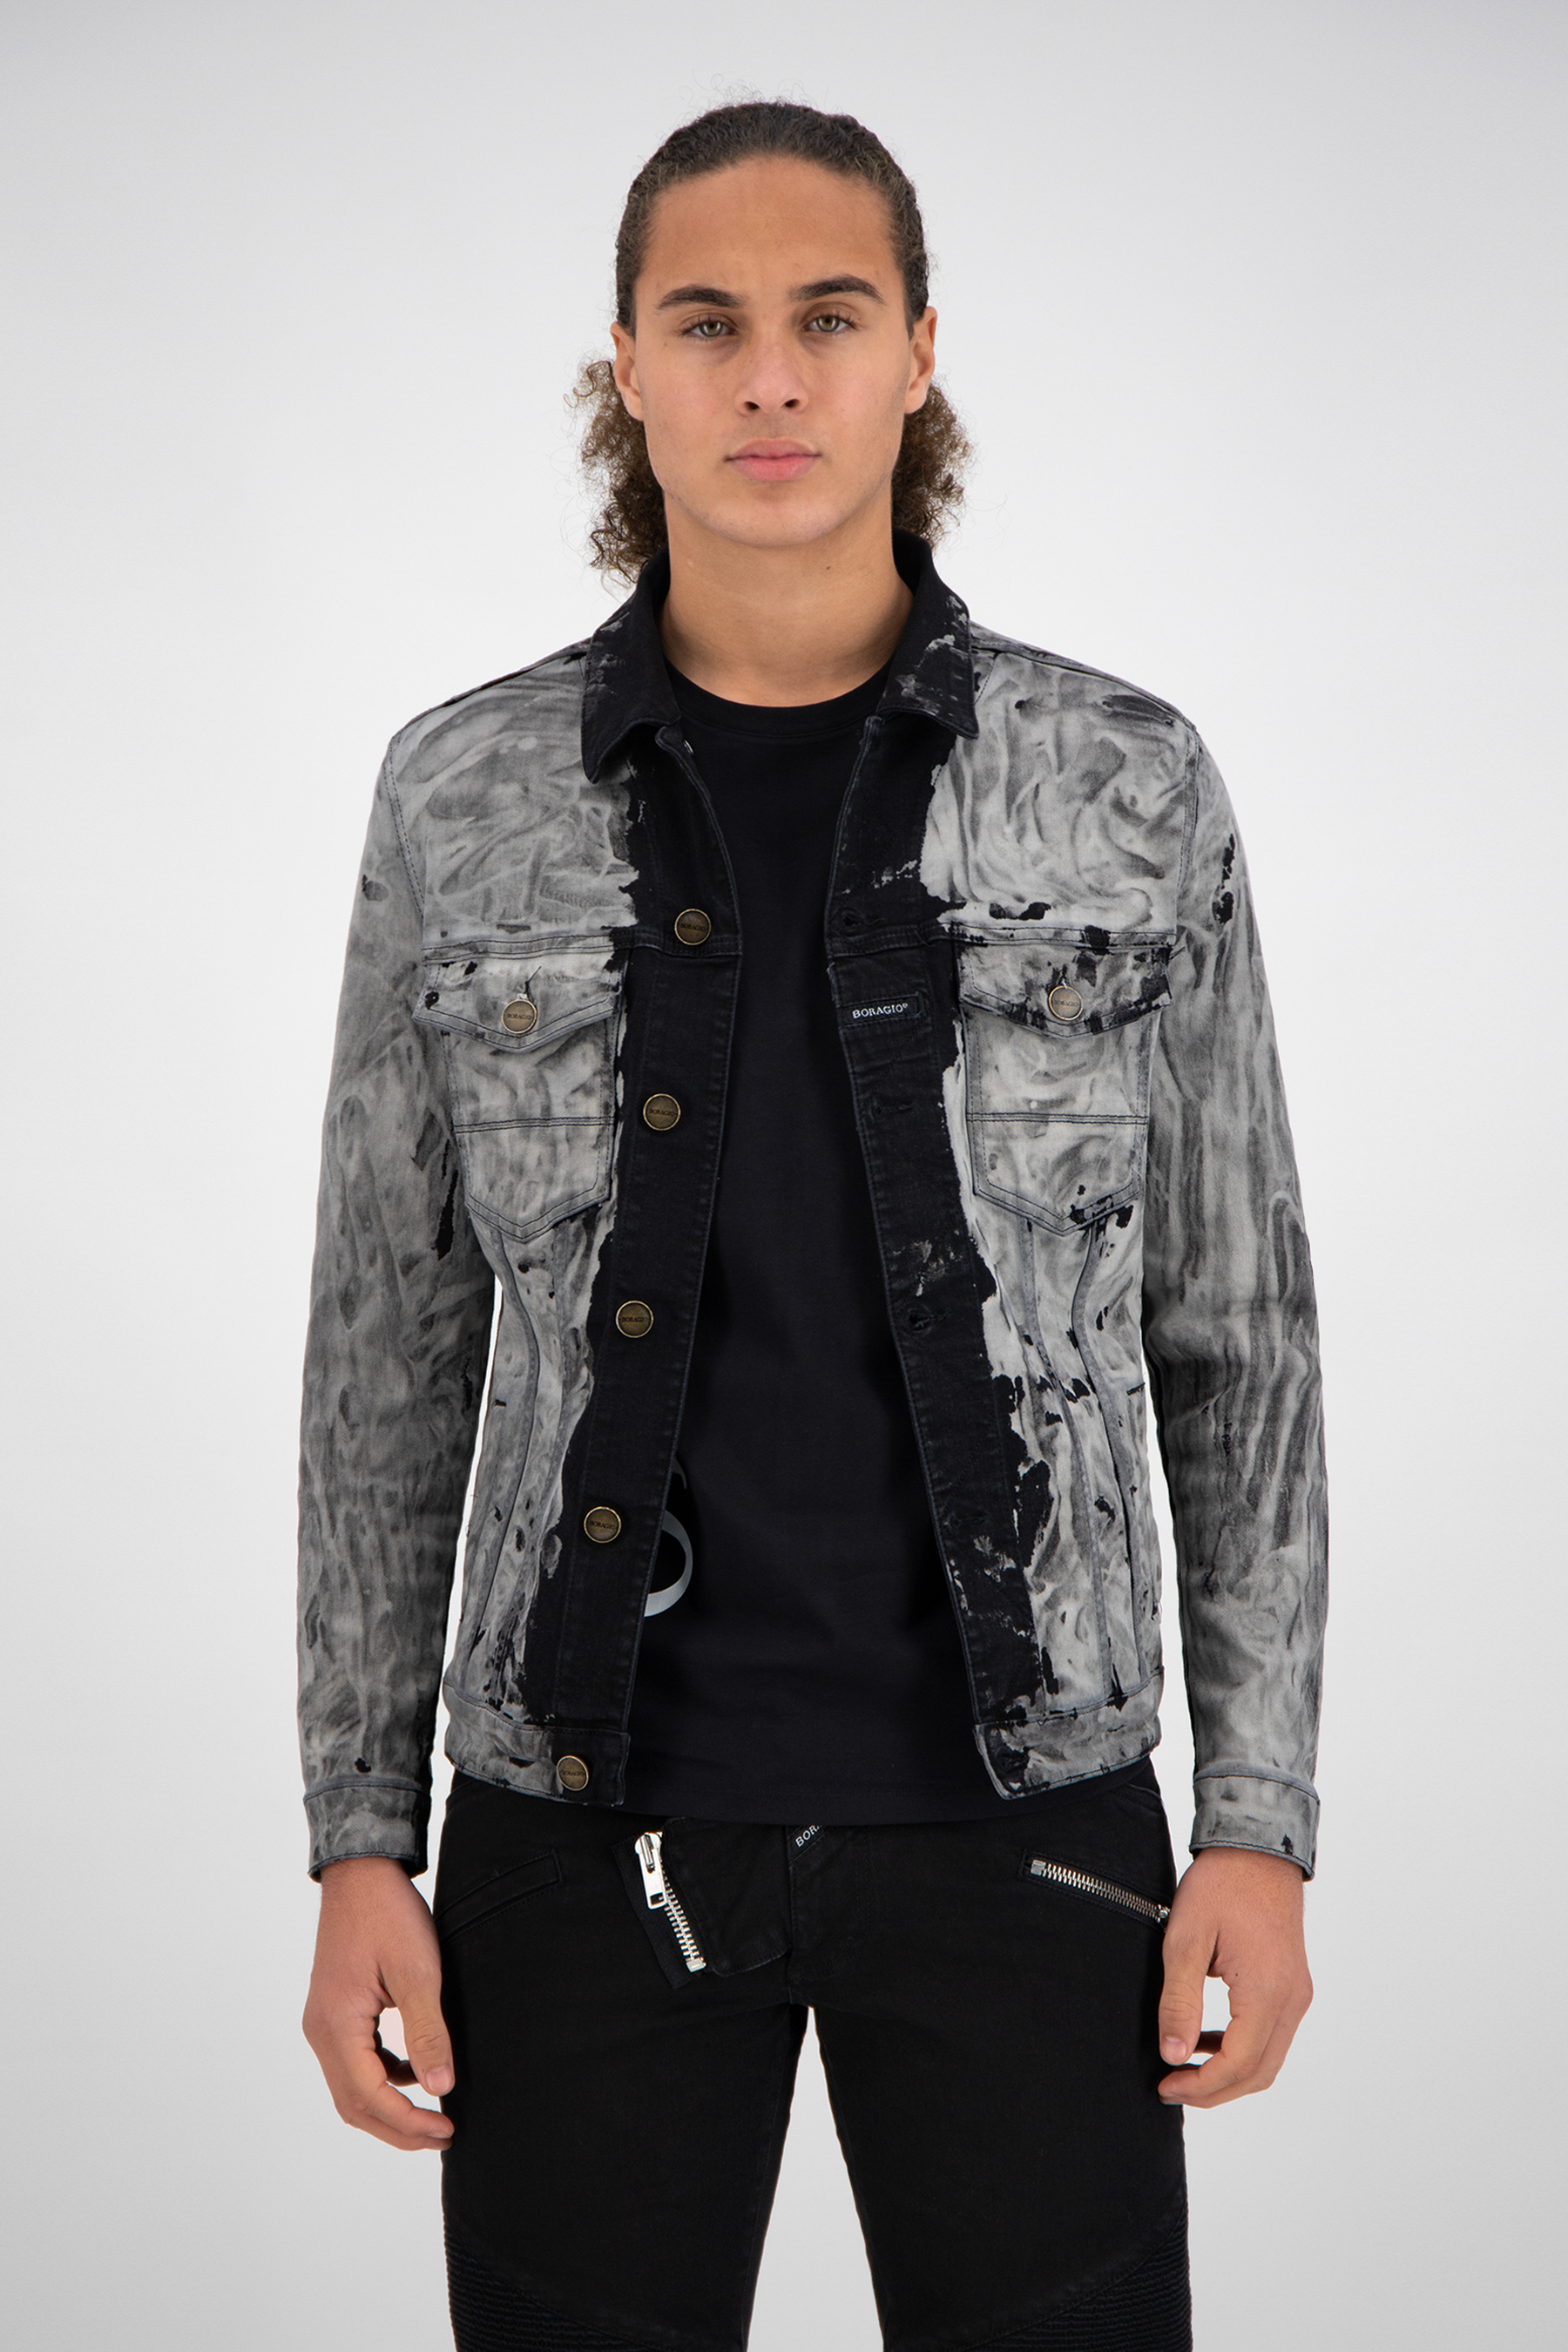 Bouwen op Verder Pickering Boragio EXCLUSIEVE spijkerjas zwart/grijs combineer deze jas met een zwarte  jeans - 7603 - Boragio Official